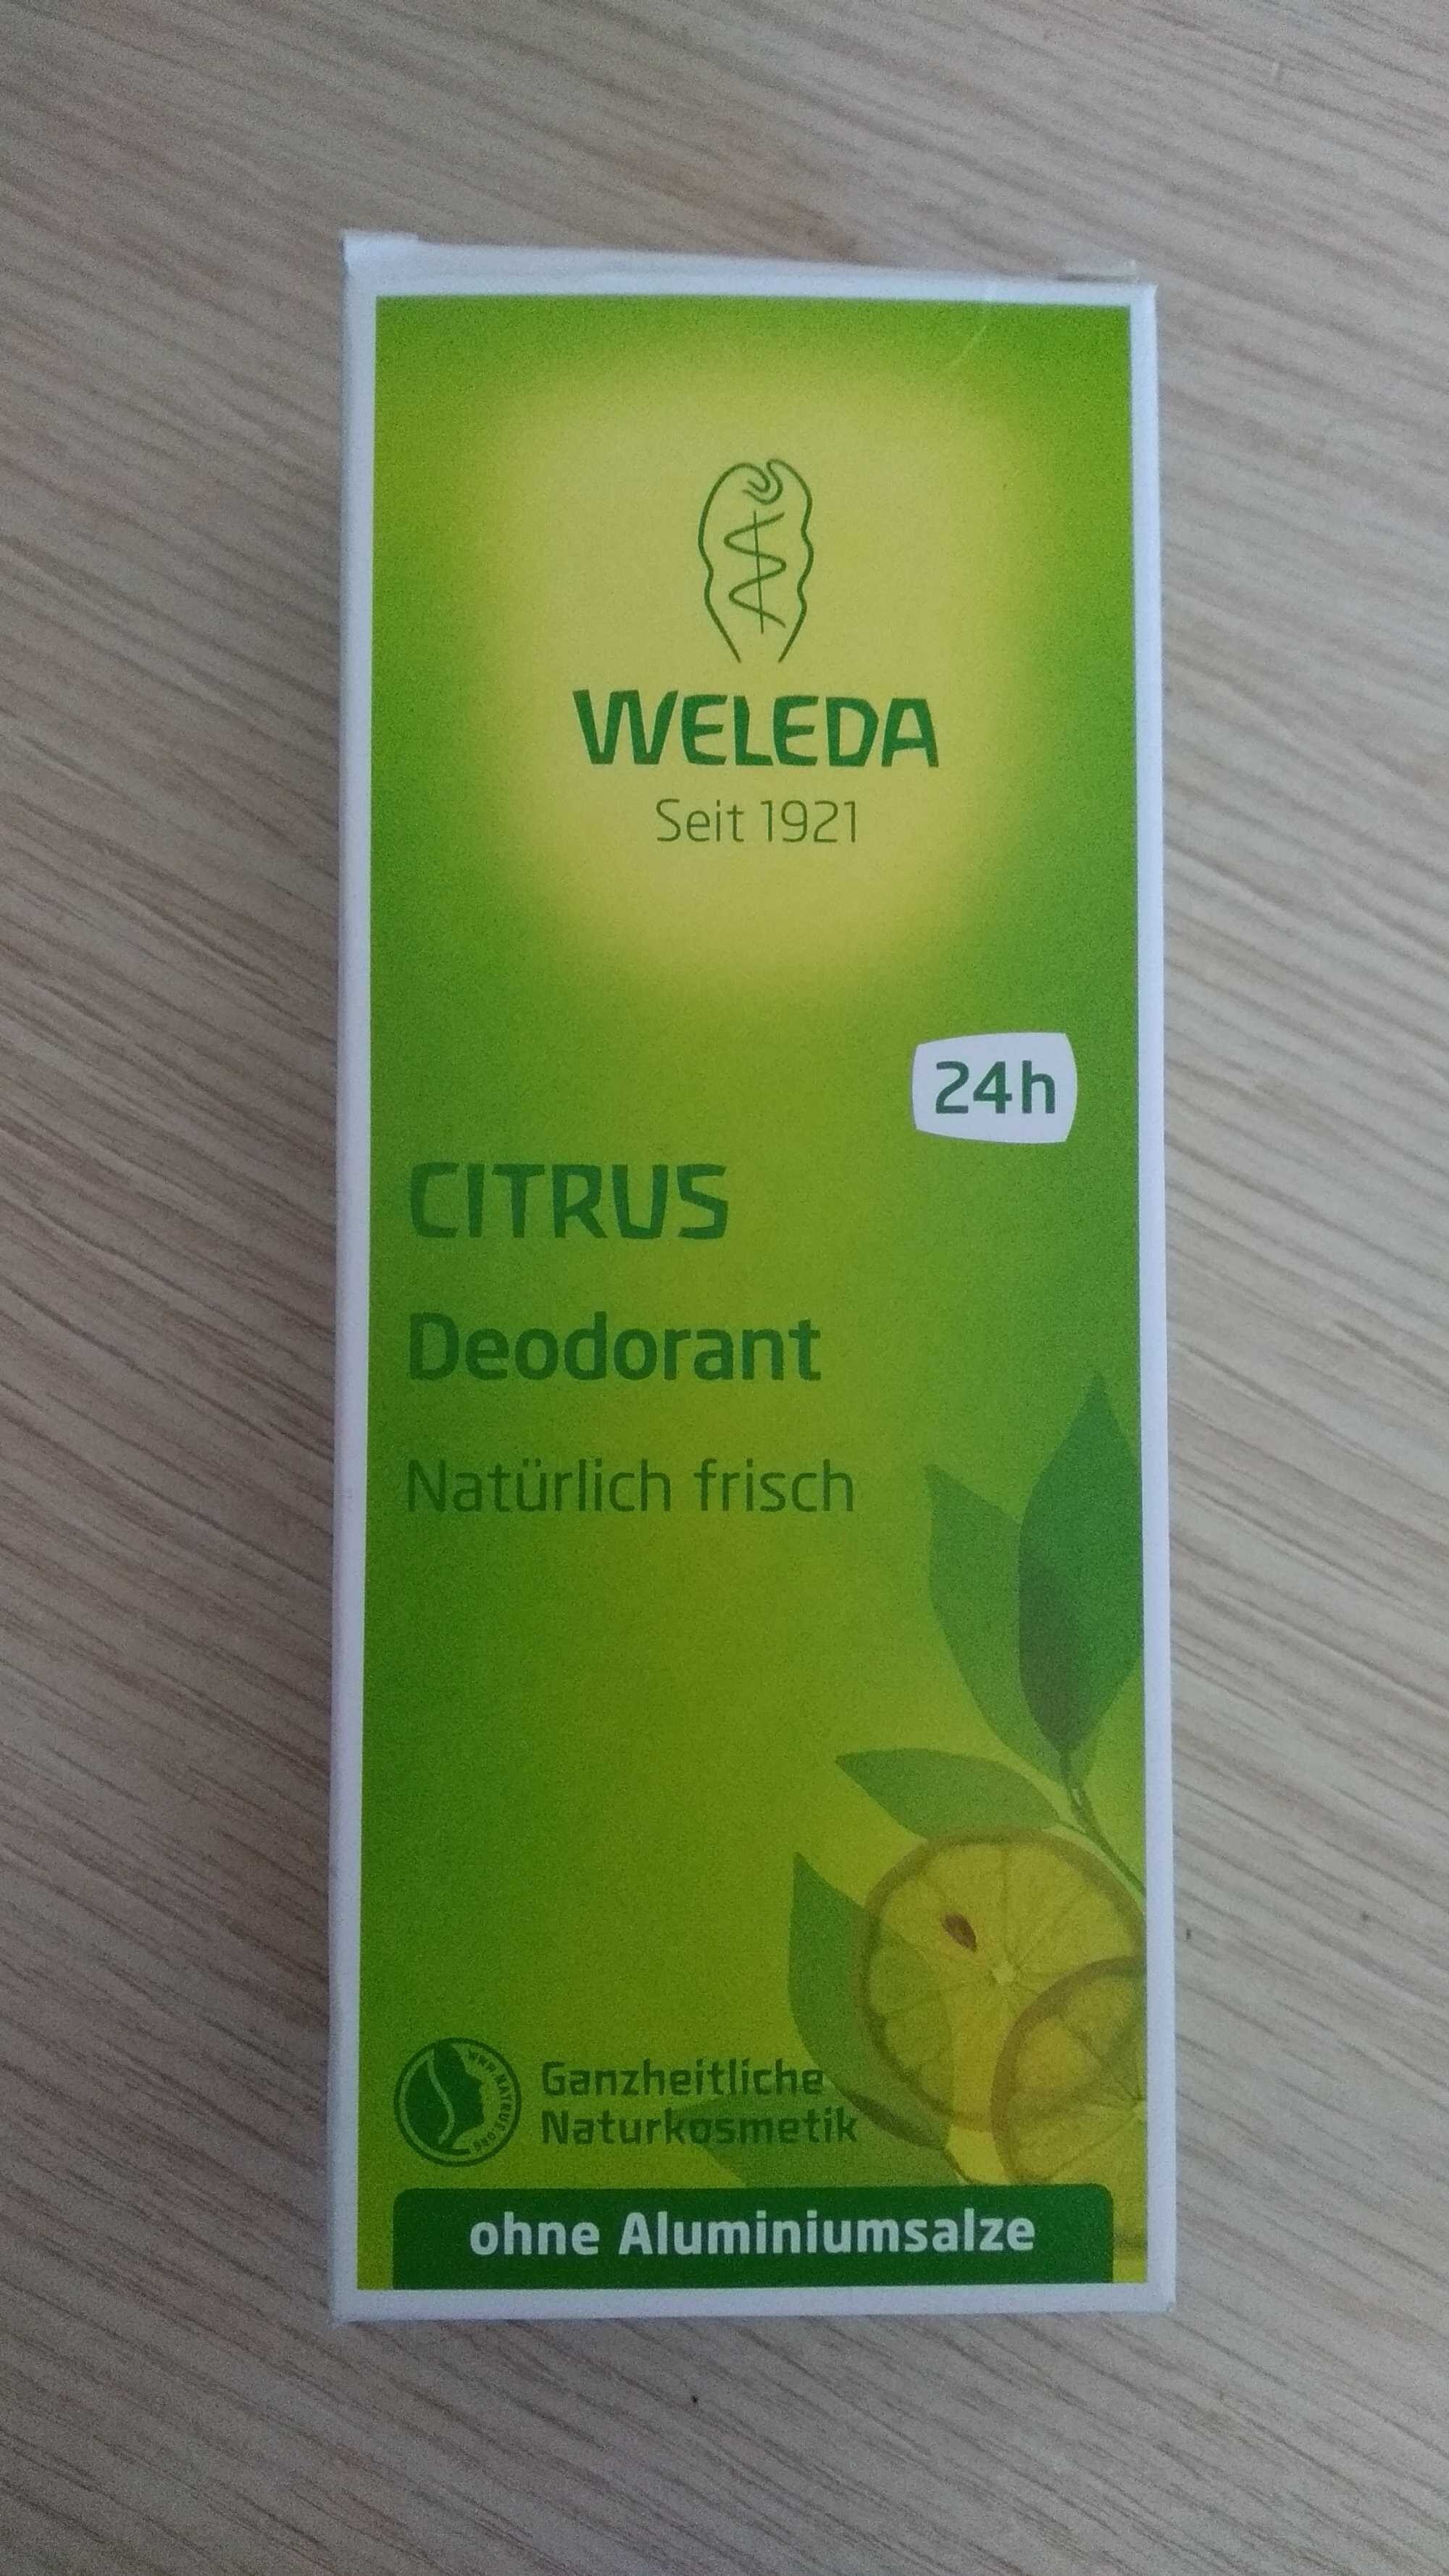 CITRUS Deodorant - Produit - fr